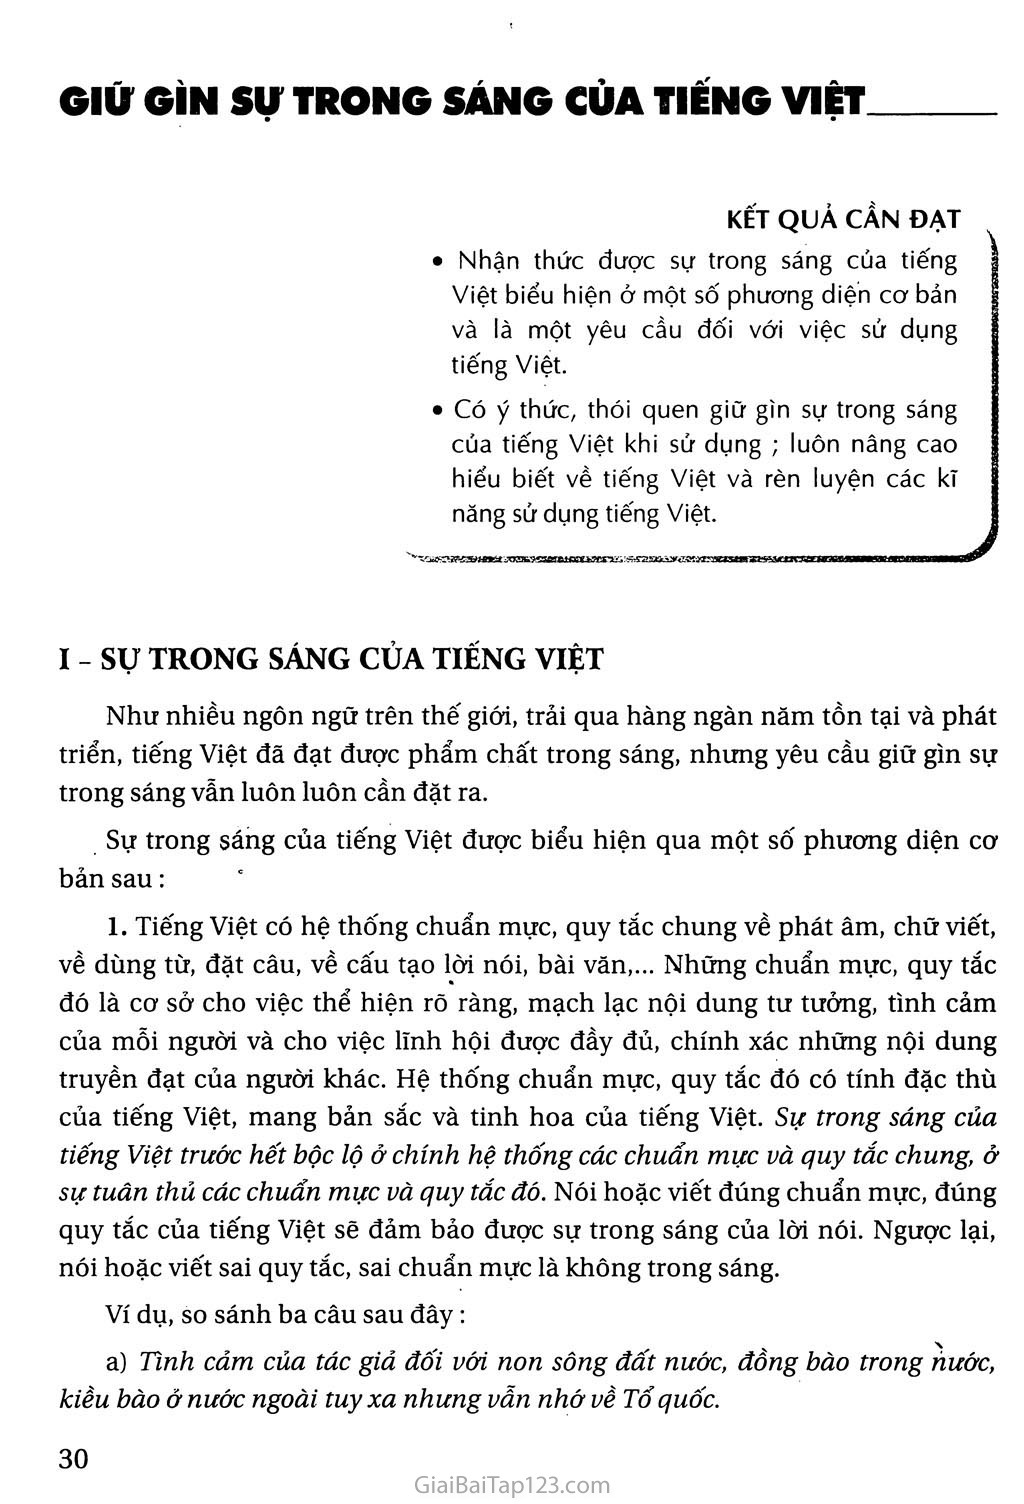 Giữ gìn sự trong sáng của Tiếng Việt trang 1